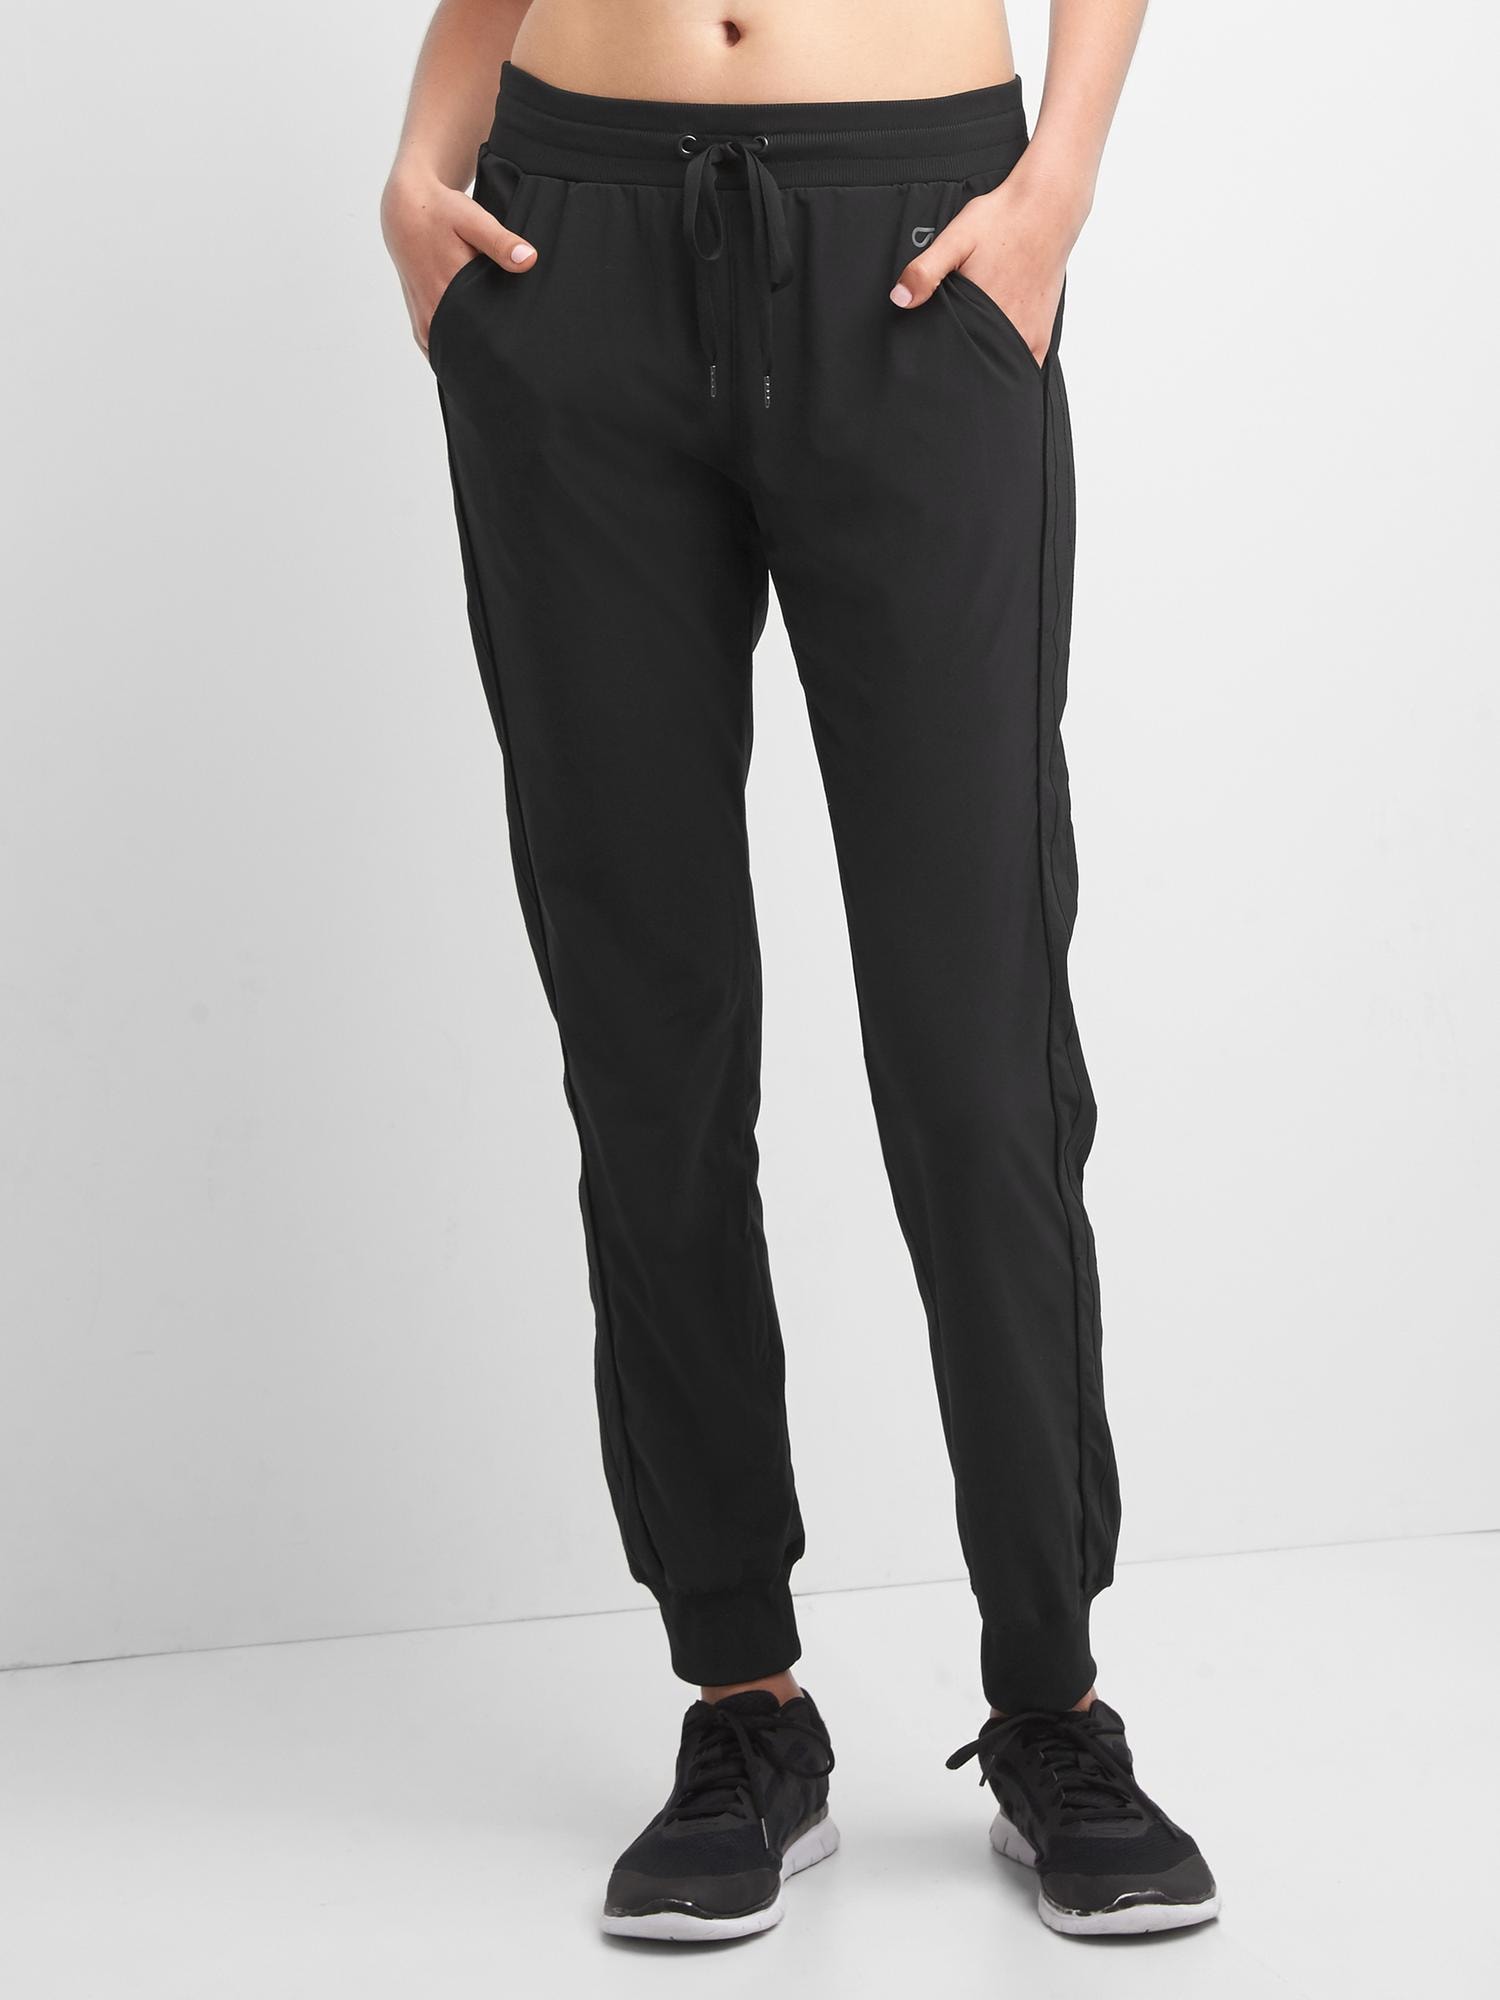 Women Capri Sweatpans Stretch Casual Joggers Pockets Stripes Cotton Crop  Pants